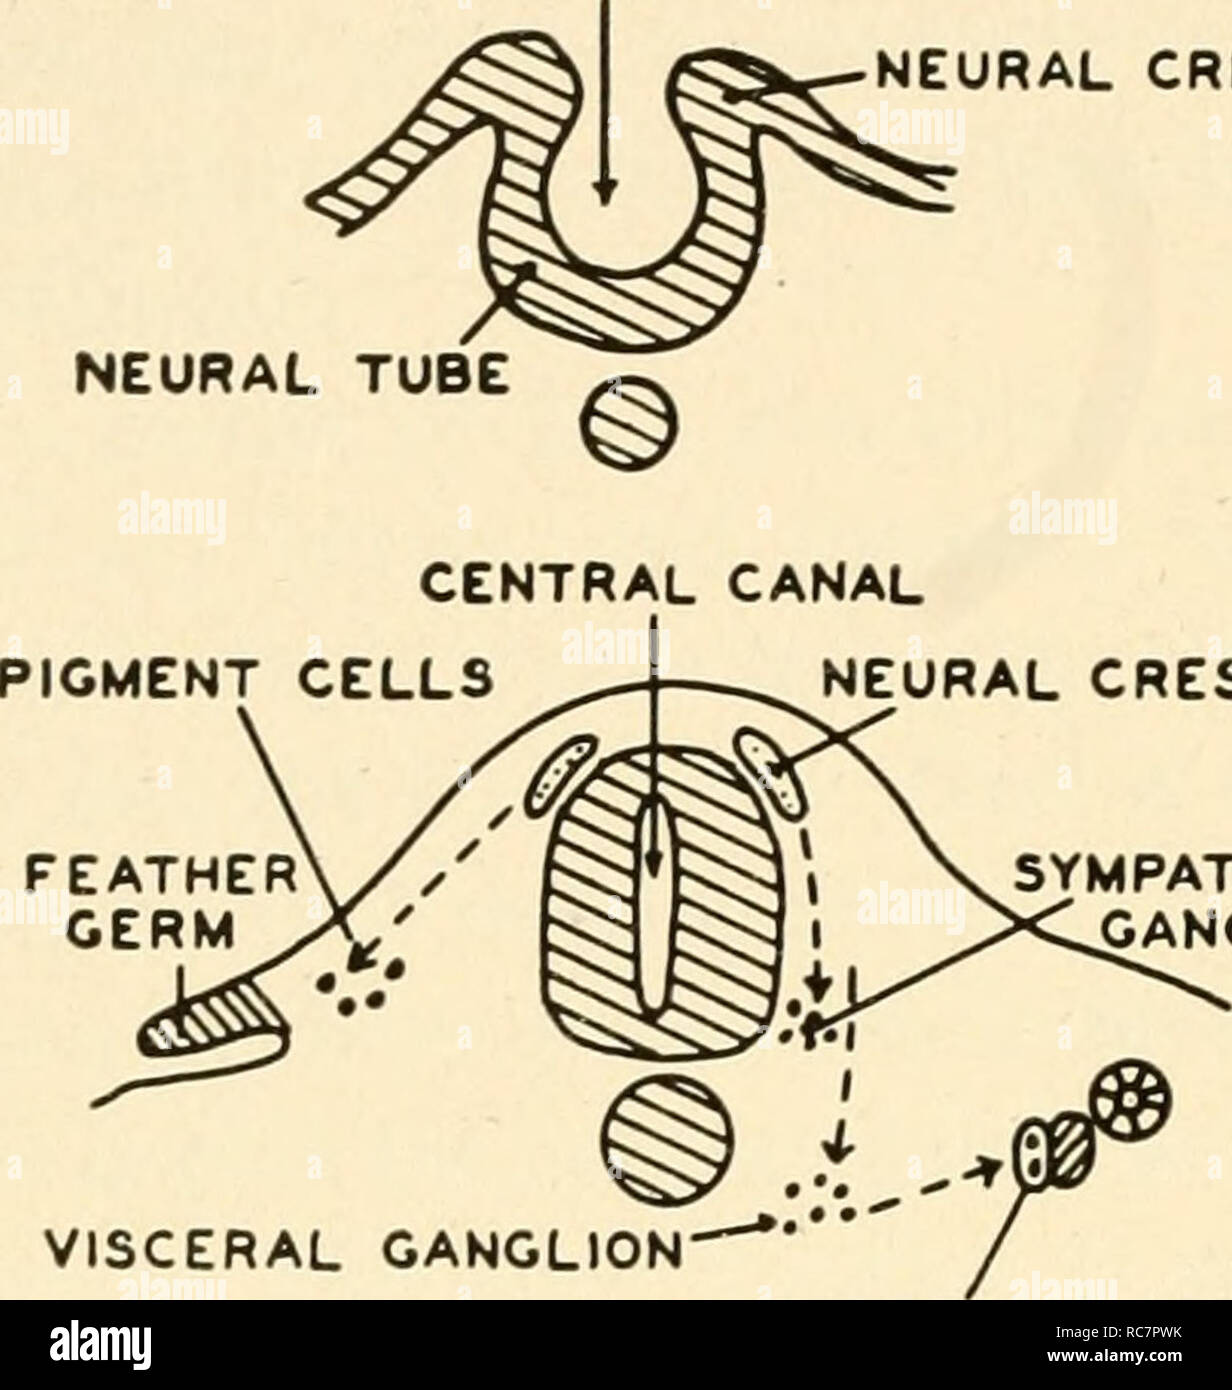 . Embriologia. Embriologia; embriologia; genealogia. 160 embriologia v, pieghe neurali NOTOCHORD PIASTRA NEURALE CENTRAL CANAL •neural crest B Fig. 94. La formazione e de- velopment del tubo neurale. In un futuro il midollo spinale e i gangli spinali sono semplicemente una piastra di elon- gated cellule. Questa piastra si ripiega a formare un tubo, come in B. quando le pieghe fusibile una striscia di tessuto è pizzicato off su entrambi i lati e questo tessuto è chiamato la cresta neurale. In C il tubo neurale è mostrato con un canale centrale, mentre la cresta neurale cellule migrano per formare i gangli simpatici e anche la più profonda che giace gangli viscerali. Foto Stock